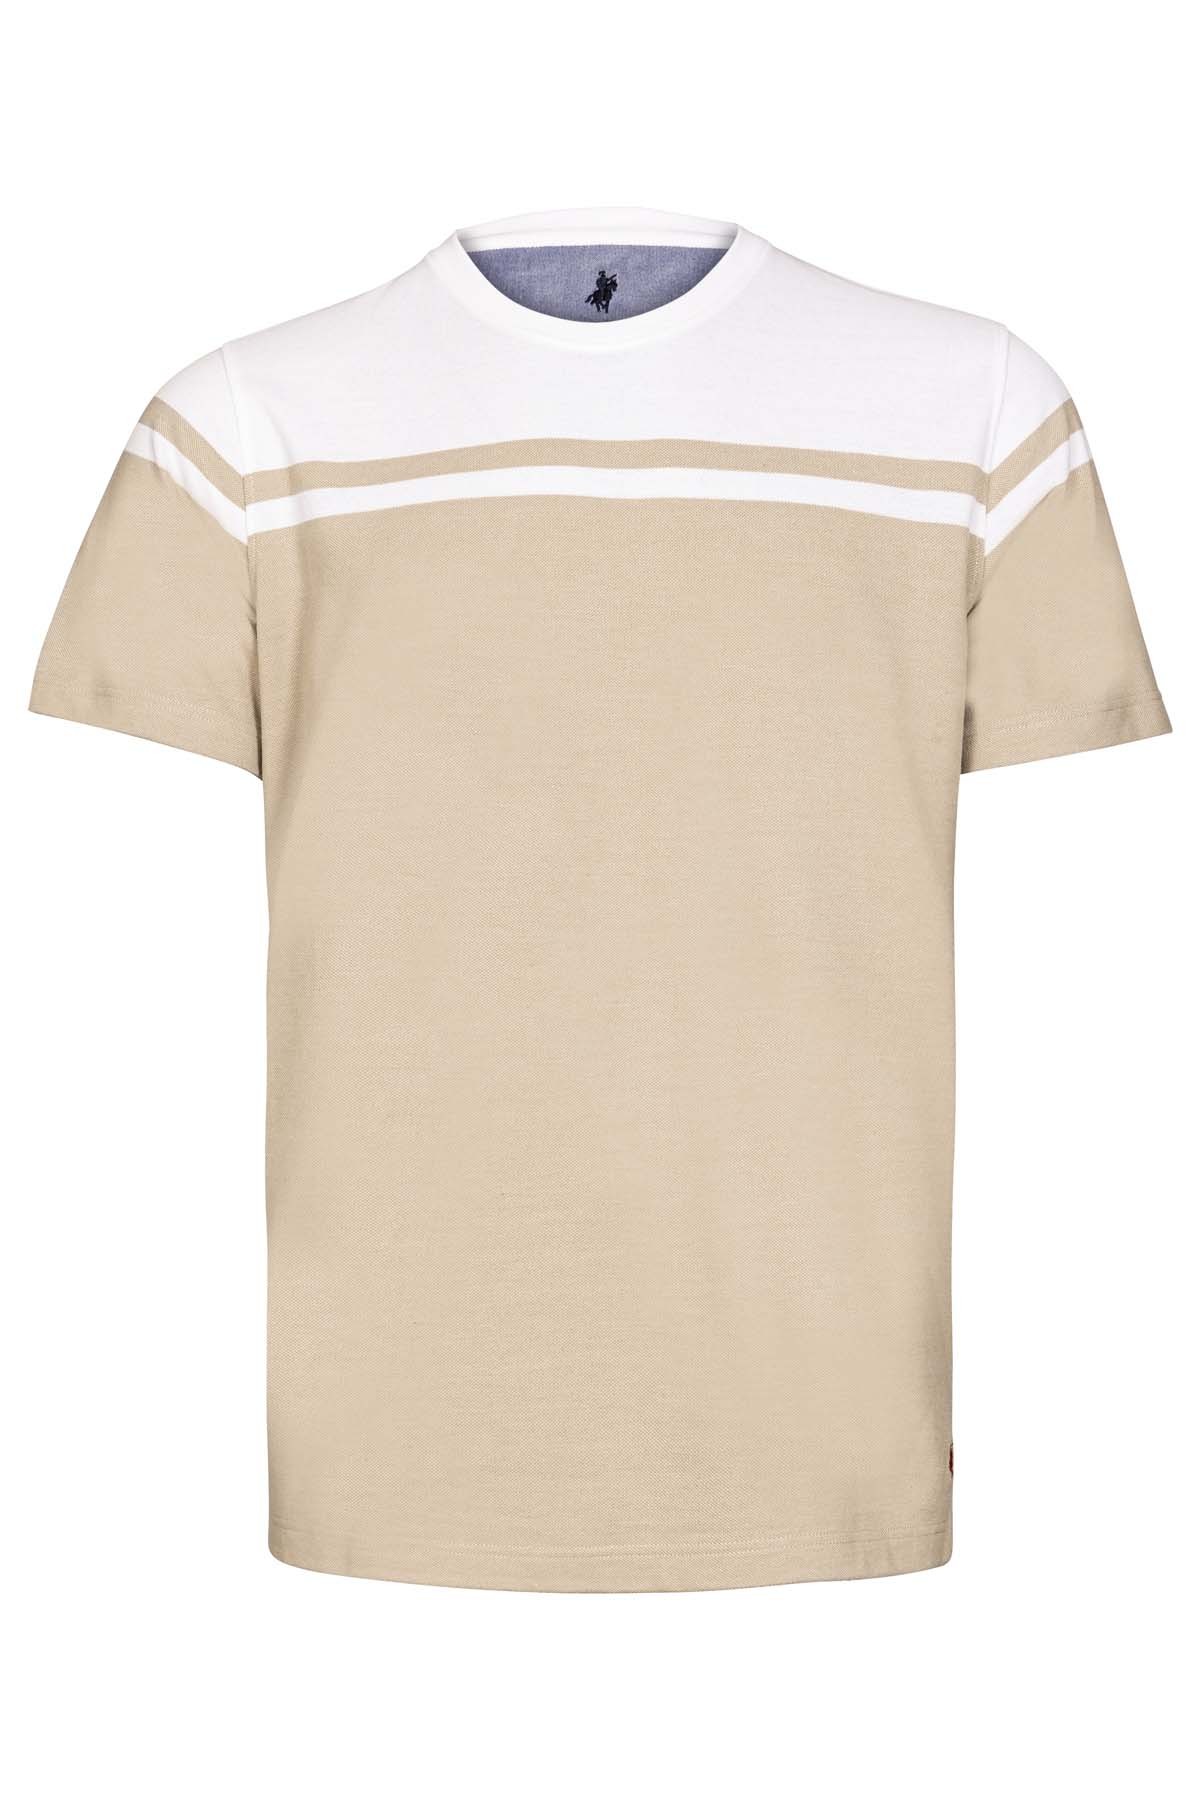 t-shirt beige et blanc en coton Bayard